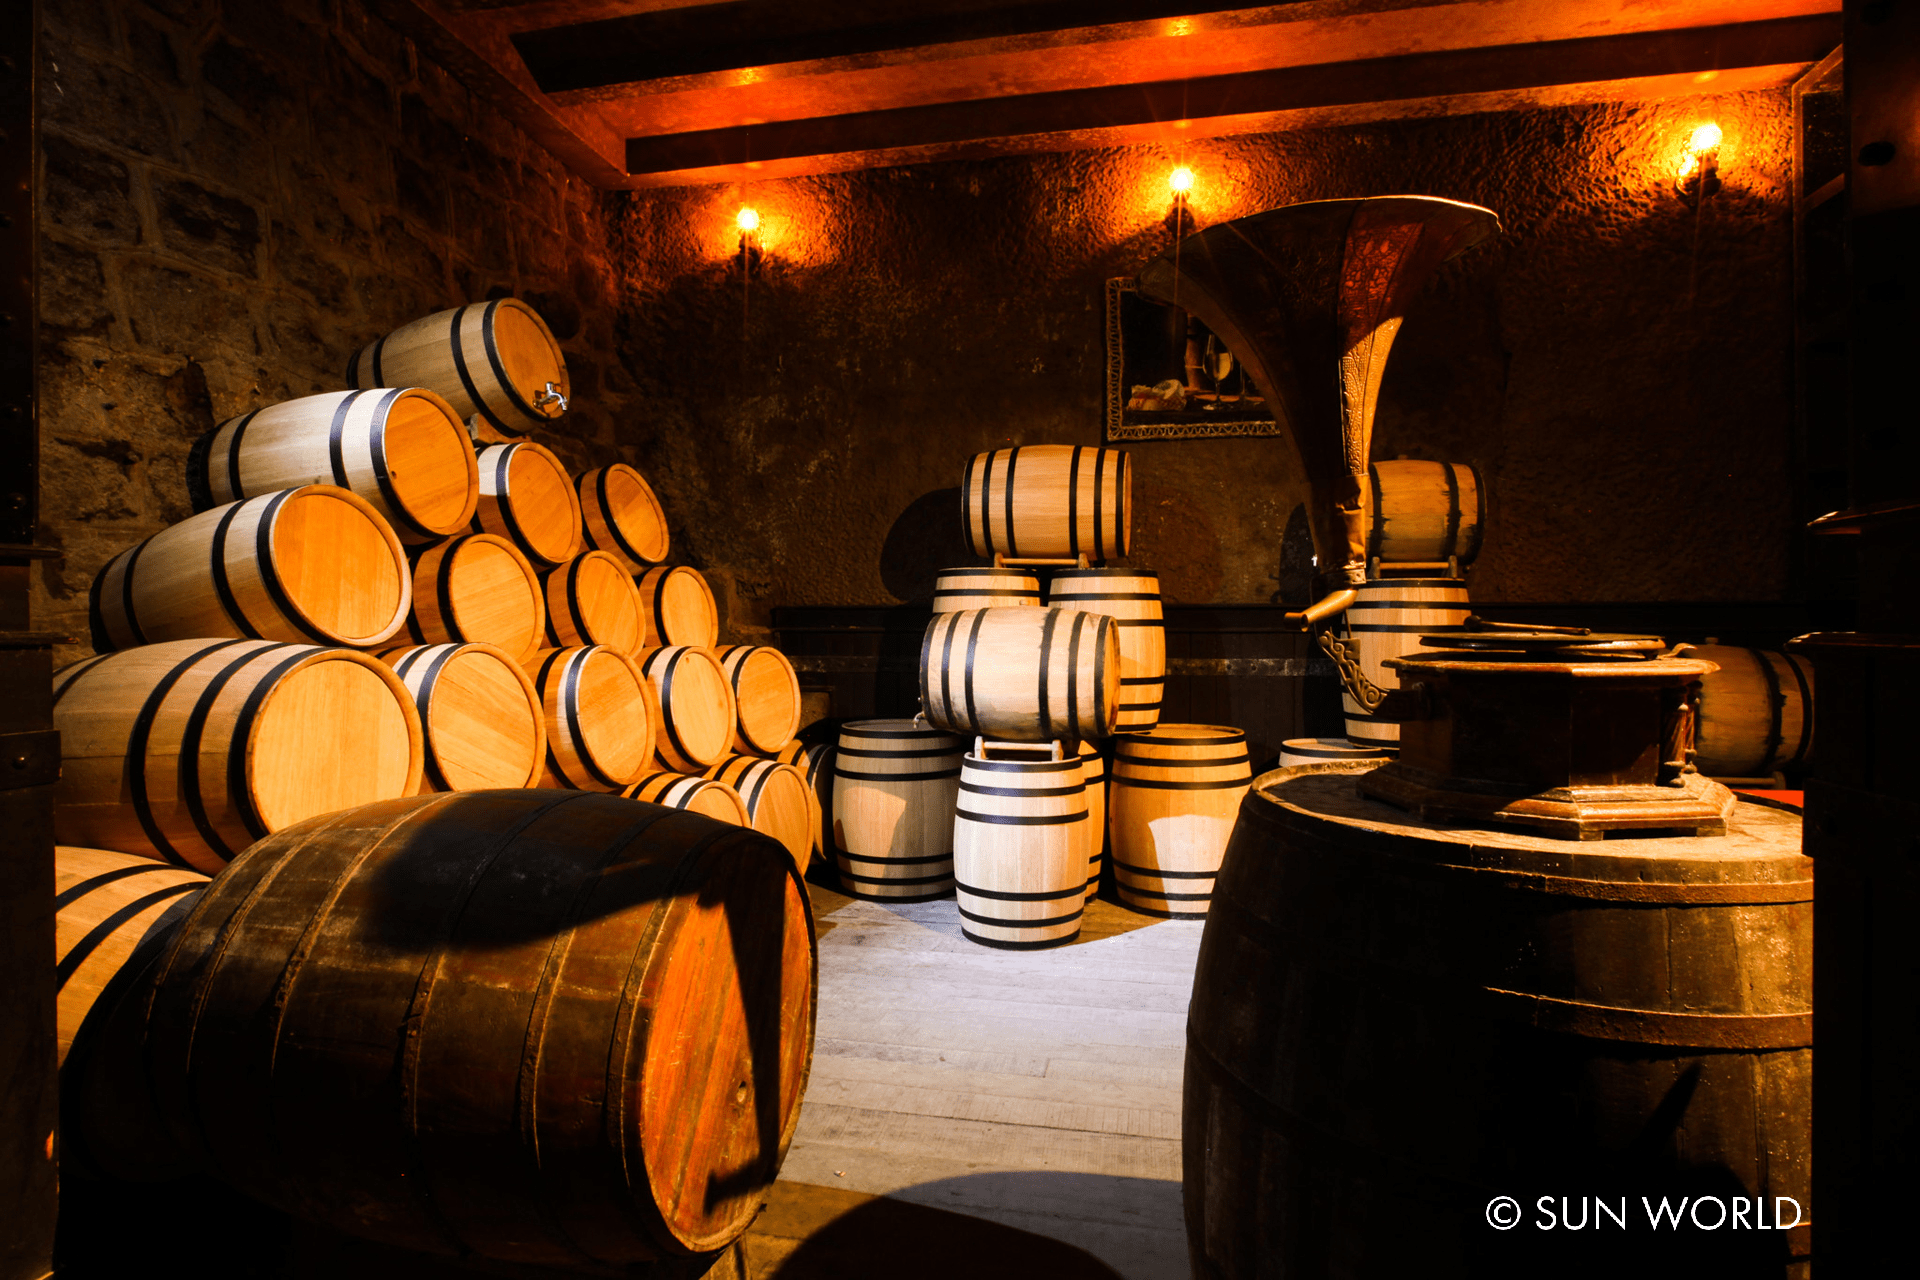 Hầm rượu Debay nằm sâu trong khe núi với nhiệt độ luôn ổn định từ 16-20 độ, là nơi cất giữ các loại rượu quý, đặc biệt là những loại Vang Pháp hảo hạng.